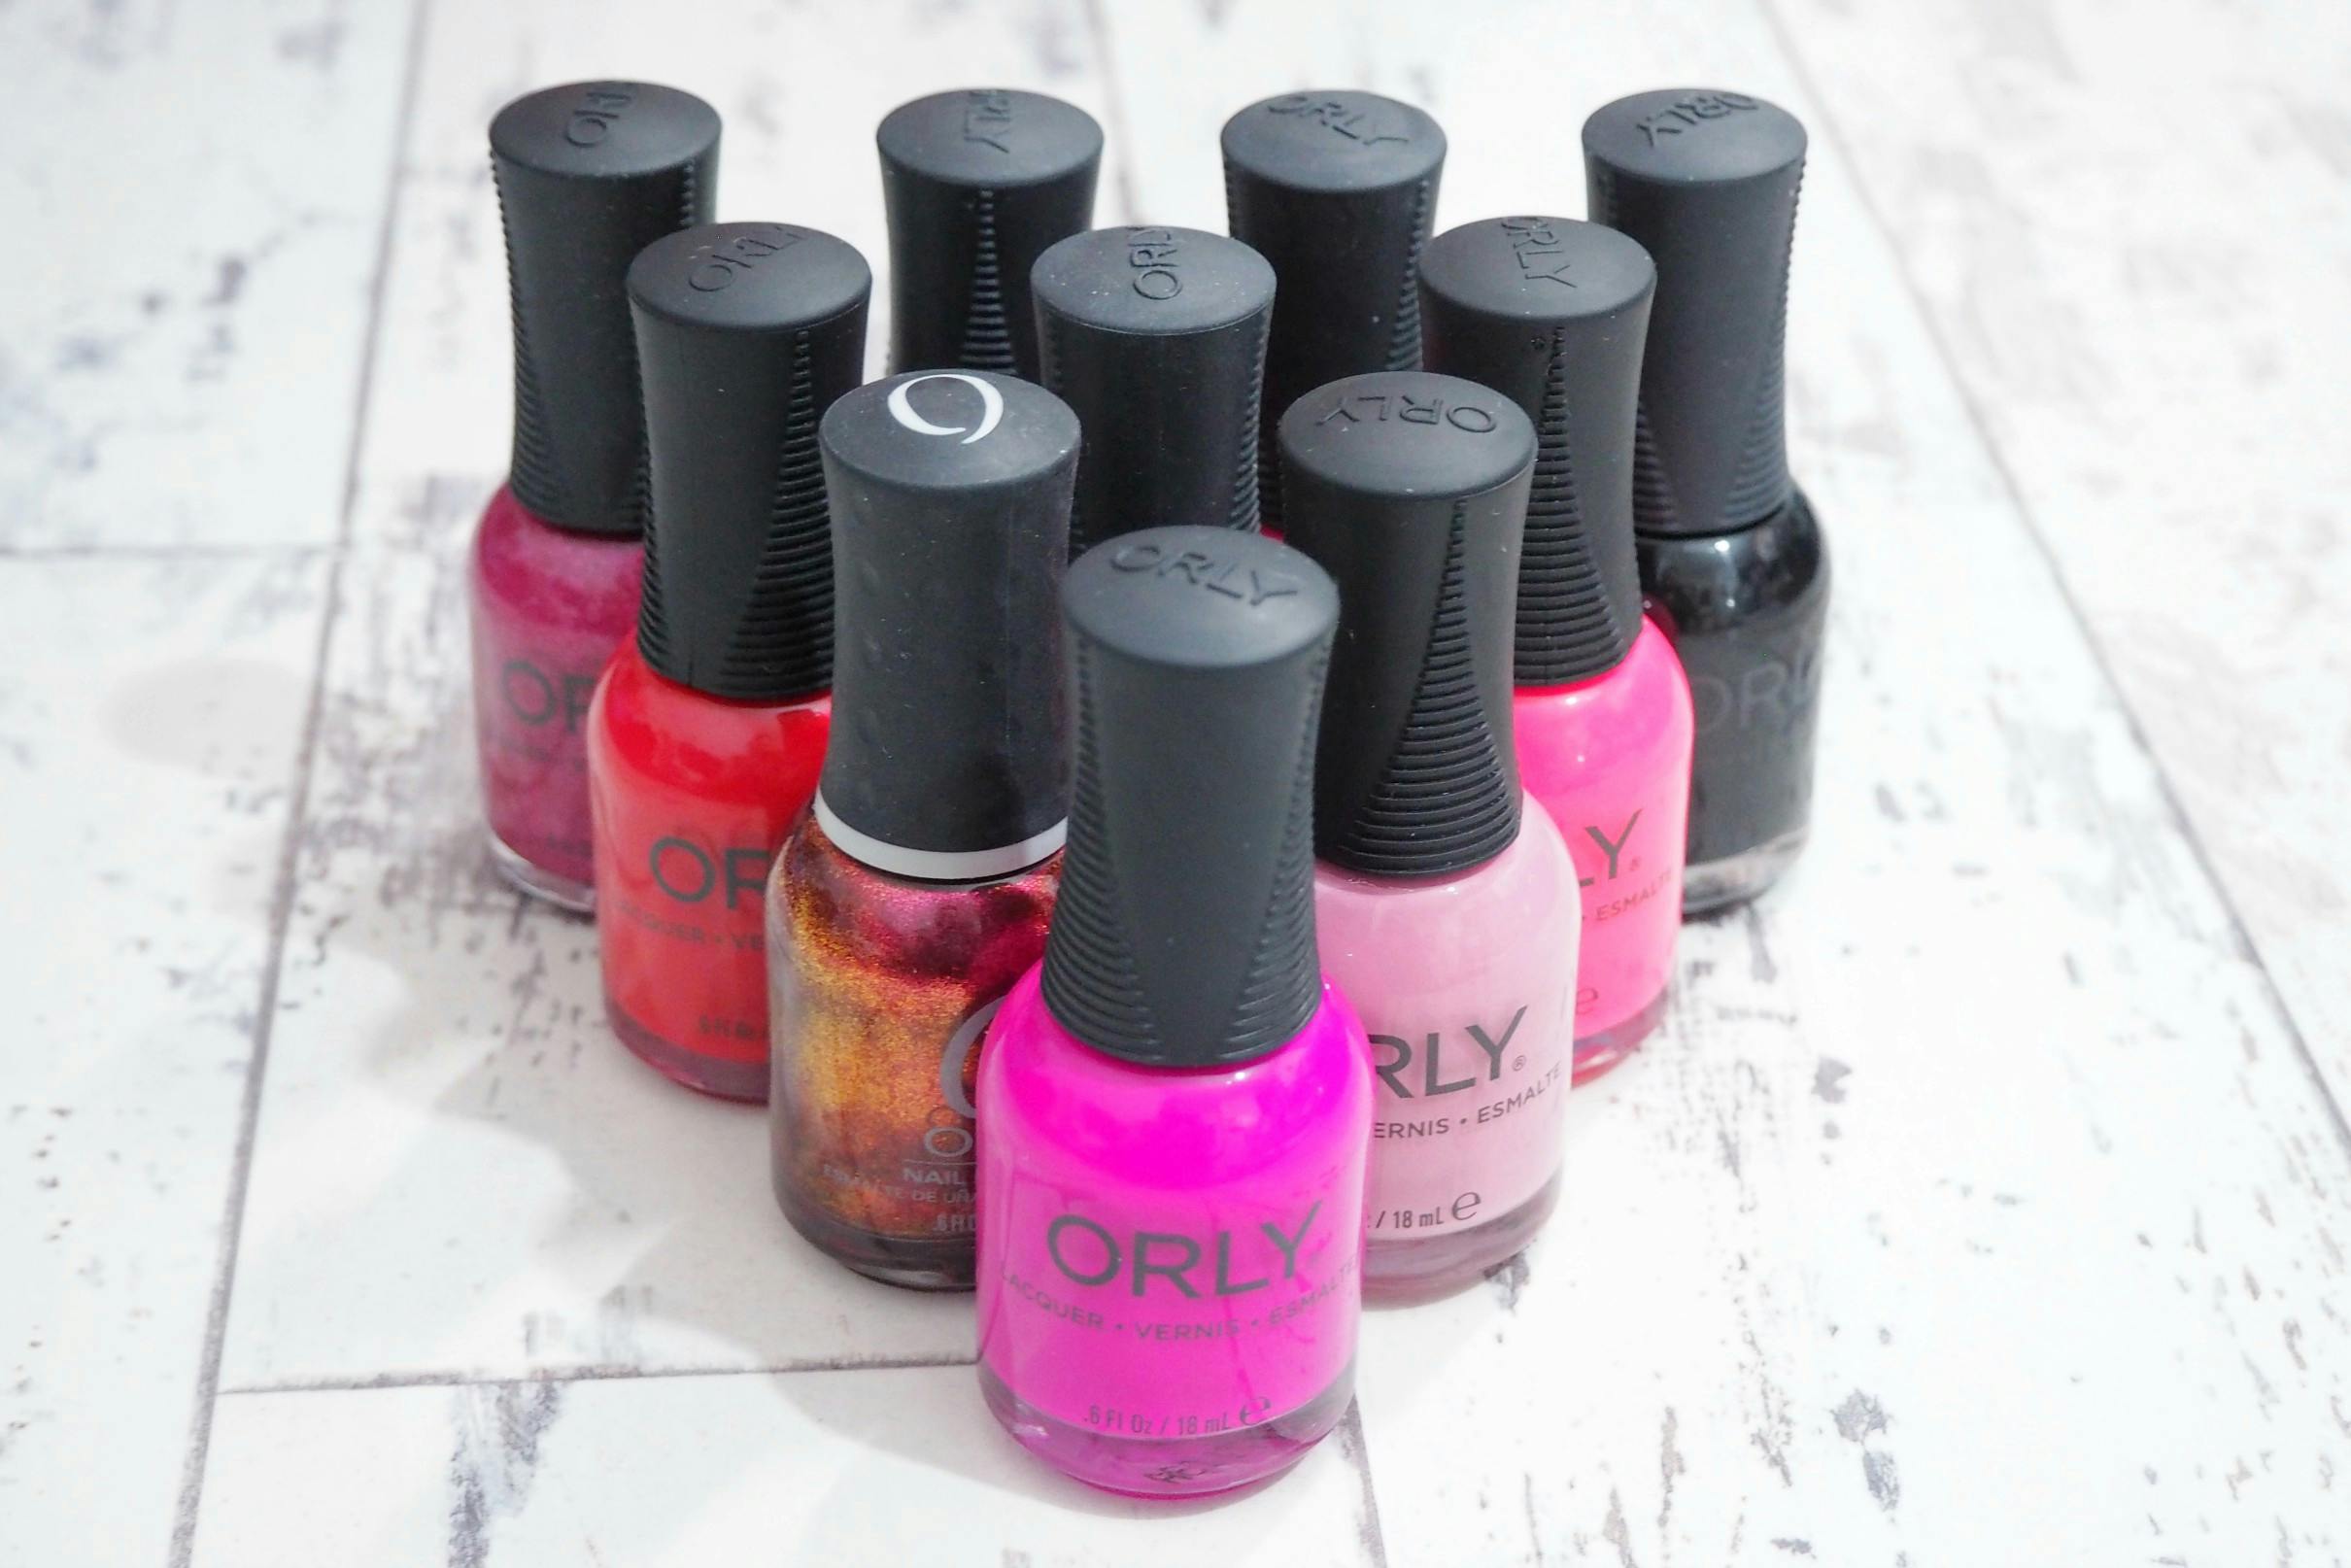 orly nail polish, orly gel, orly long lasting nail polish, orly best nail polish